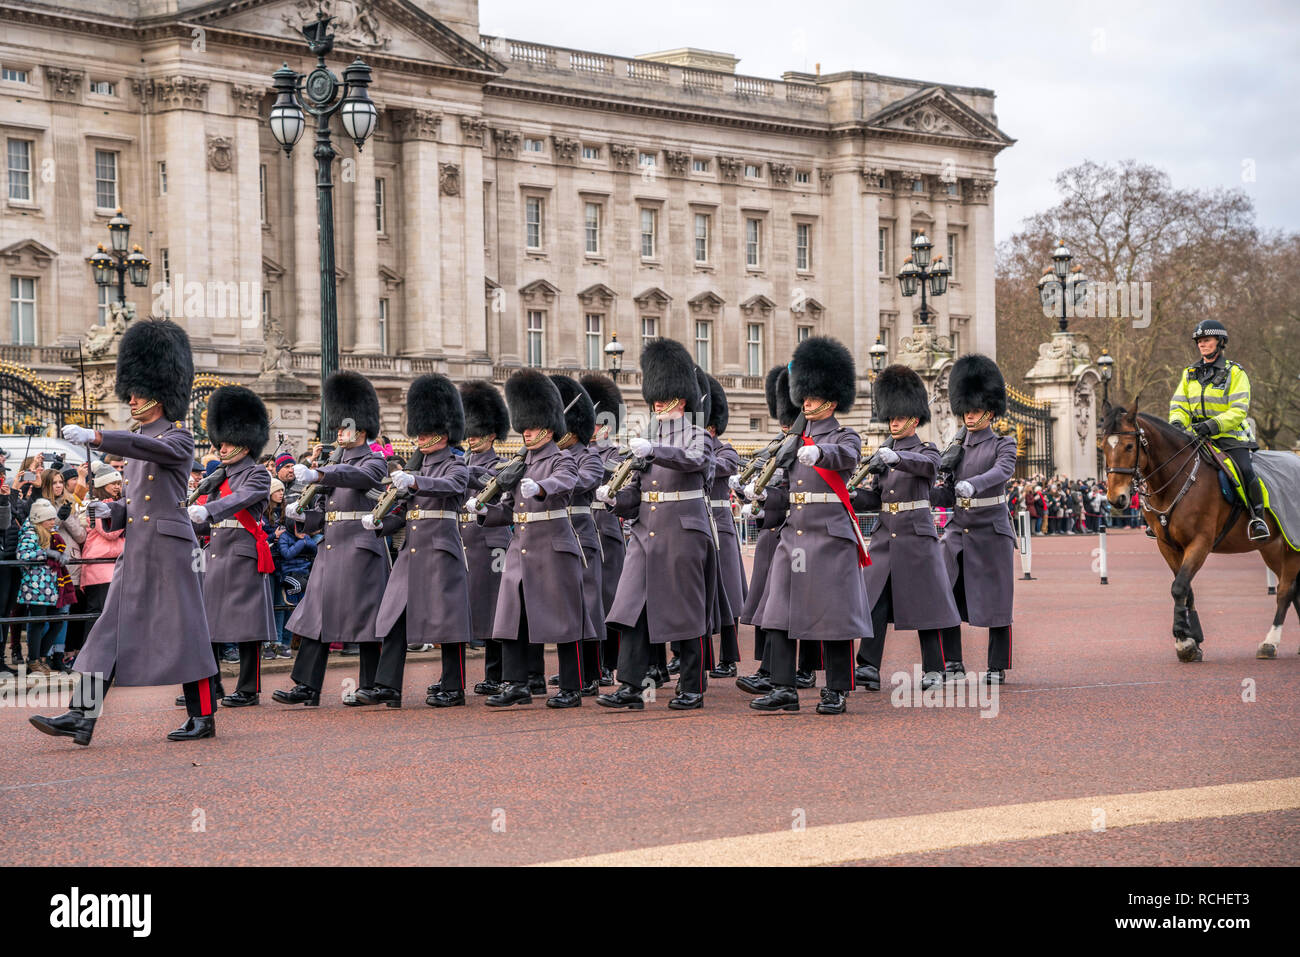 Traditionelle Wachablösung Changing the Guard vor dem Buckingham Palace, London, Vereinigtes Königreich Großbritannien, Europa |  traditional ceremony Stock Photo